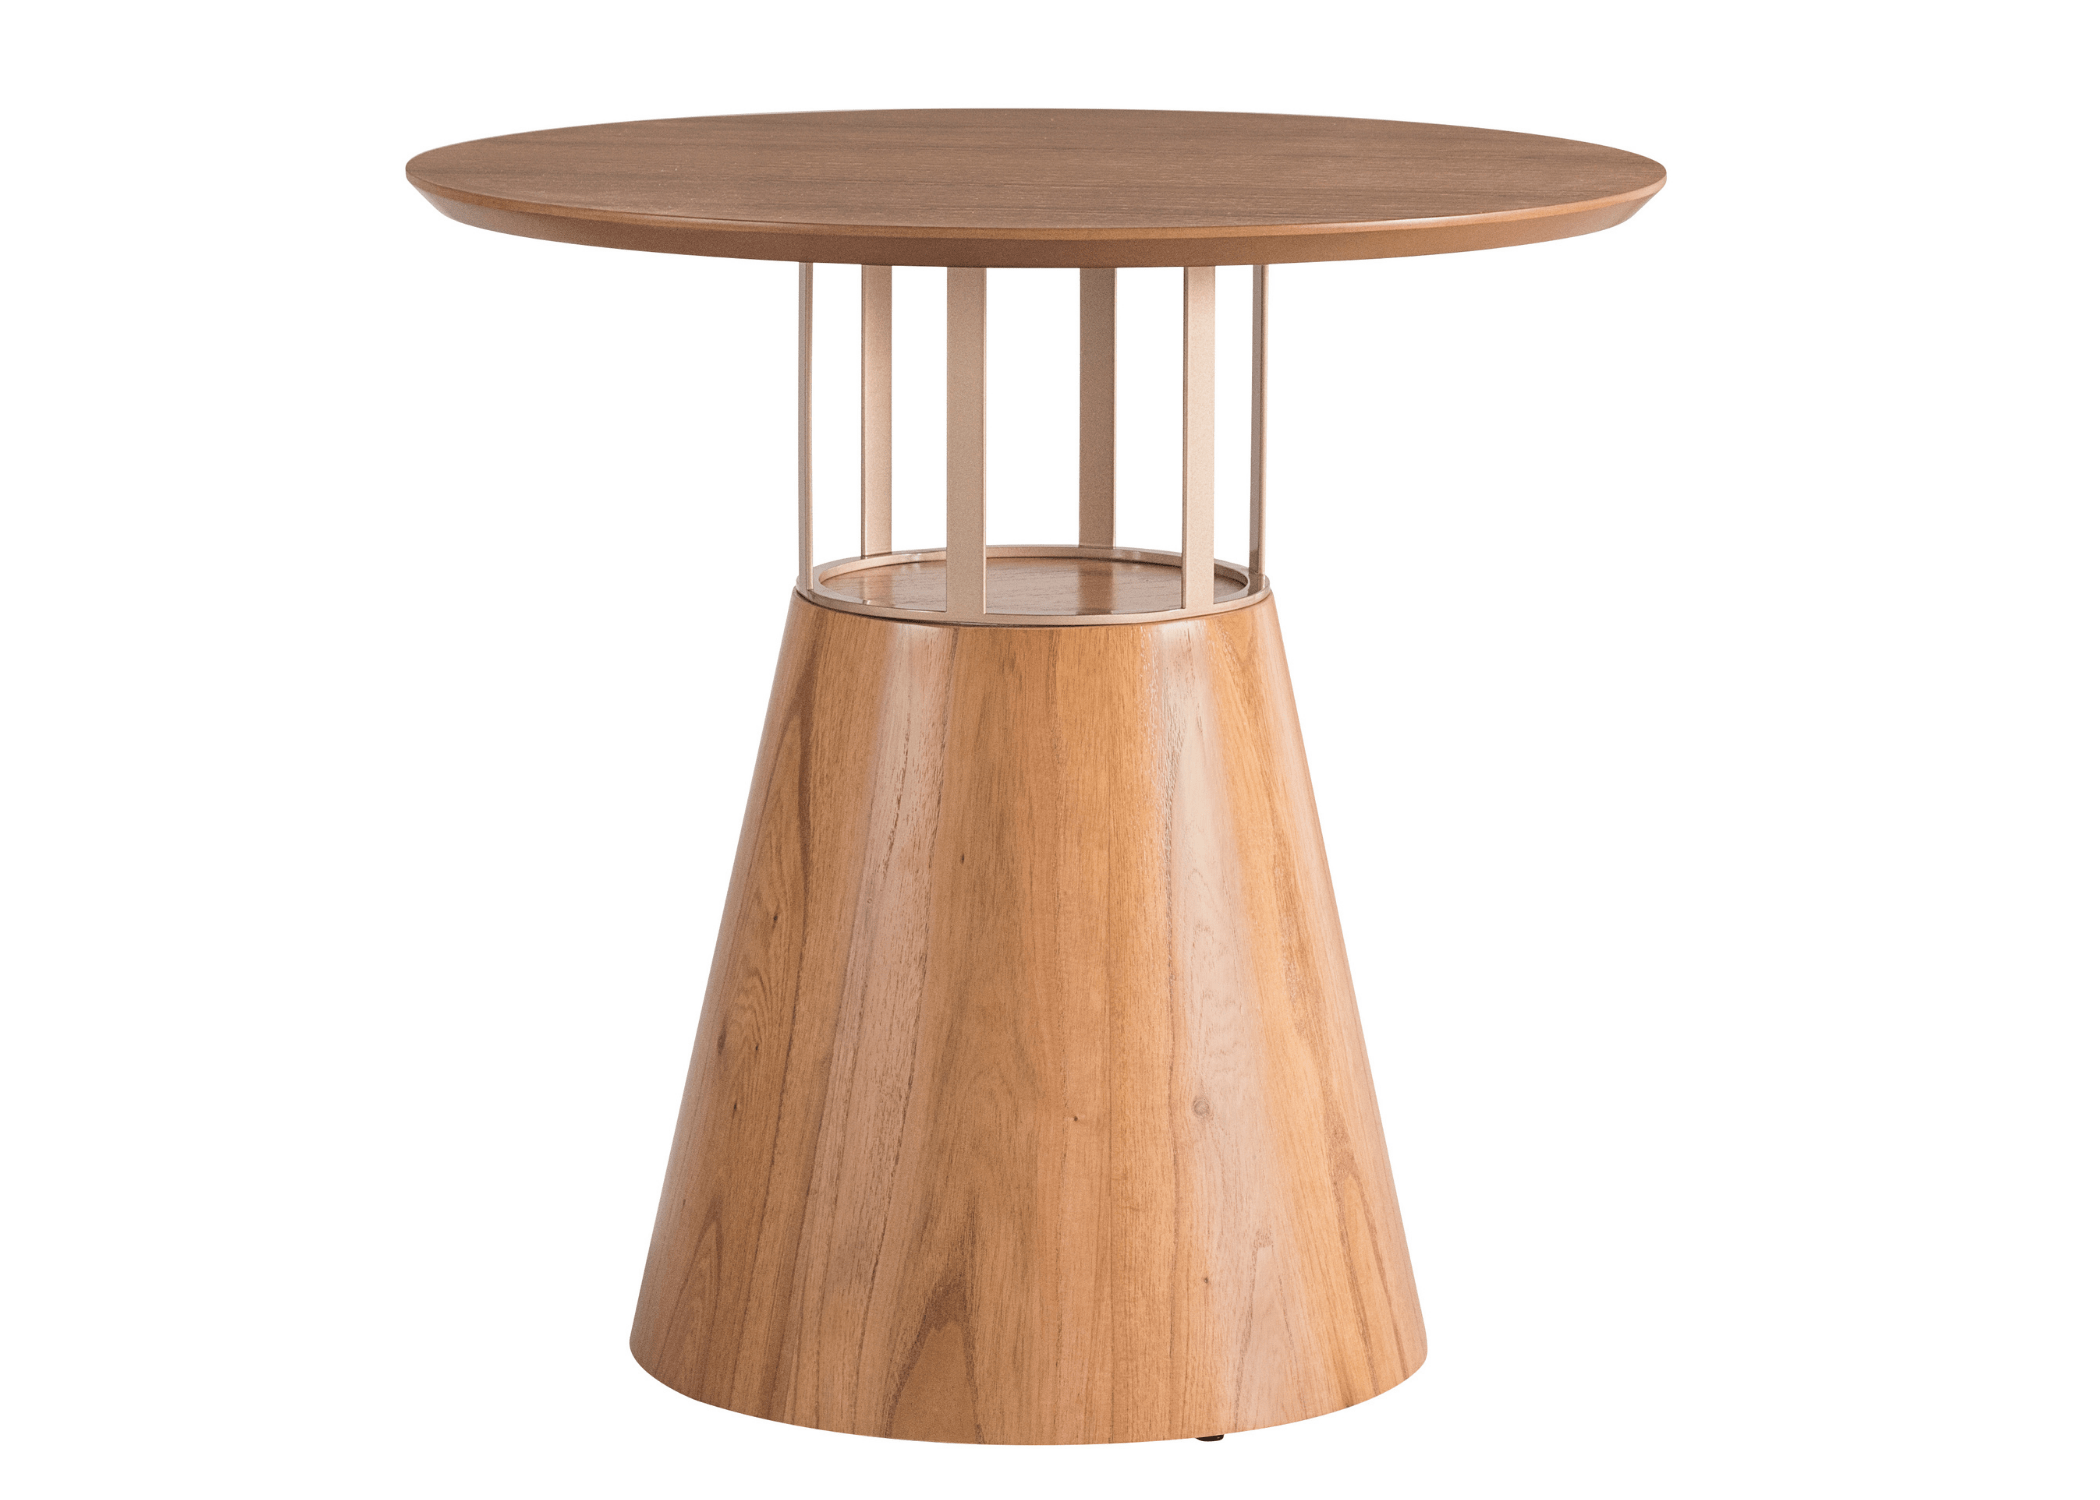 Refeição sofisticada em torno da mesa Lidi, mostrando suas especificidades e durabilidade.